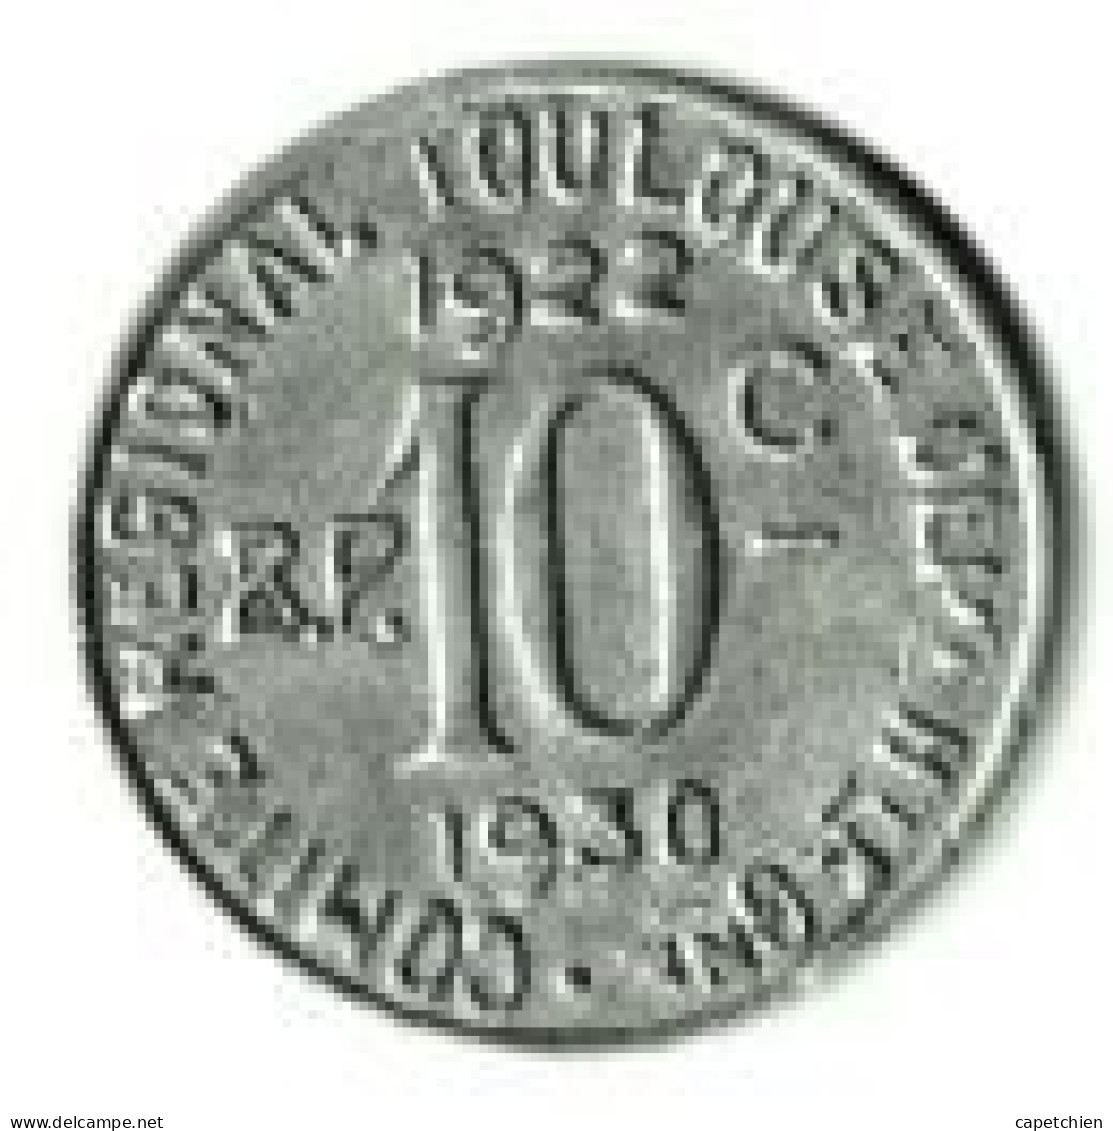 FRANCE/ NECESSITE / UNION LATINE / COMITE REGIONAL TOULOUSE  / 10 CENT / 1922-1930 / ALU / 1.12 G / 23 Mm - Monétaires / De Nécessité